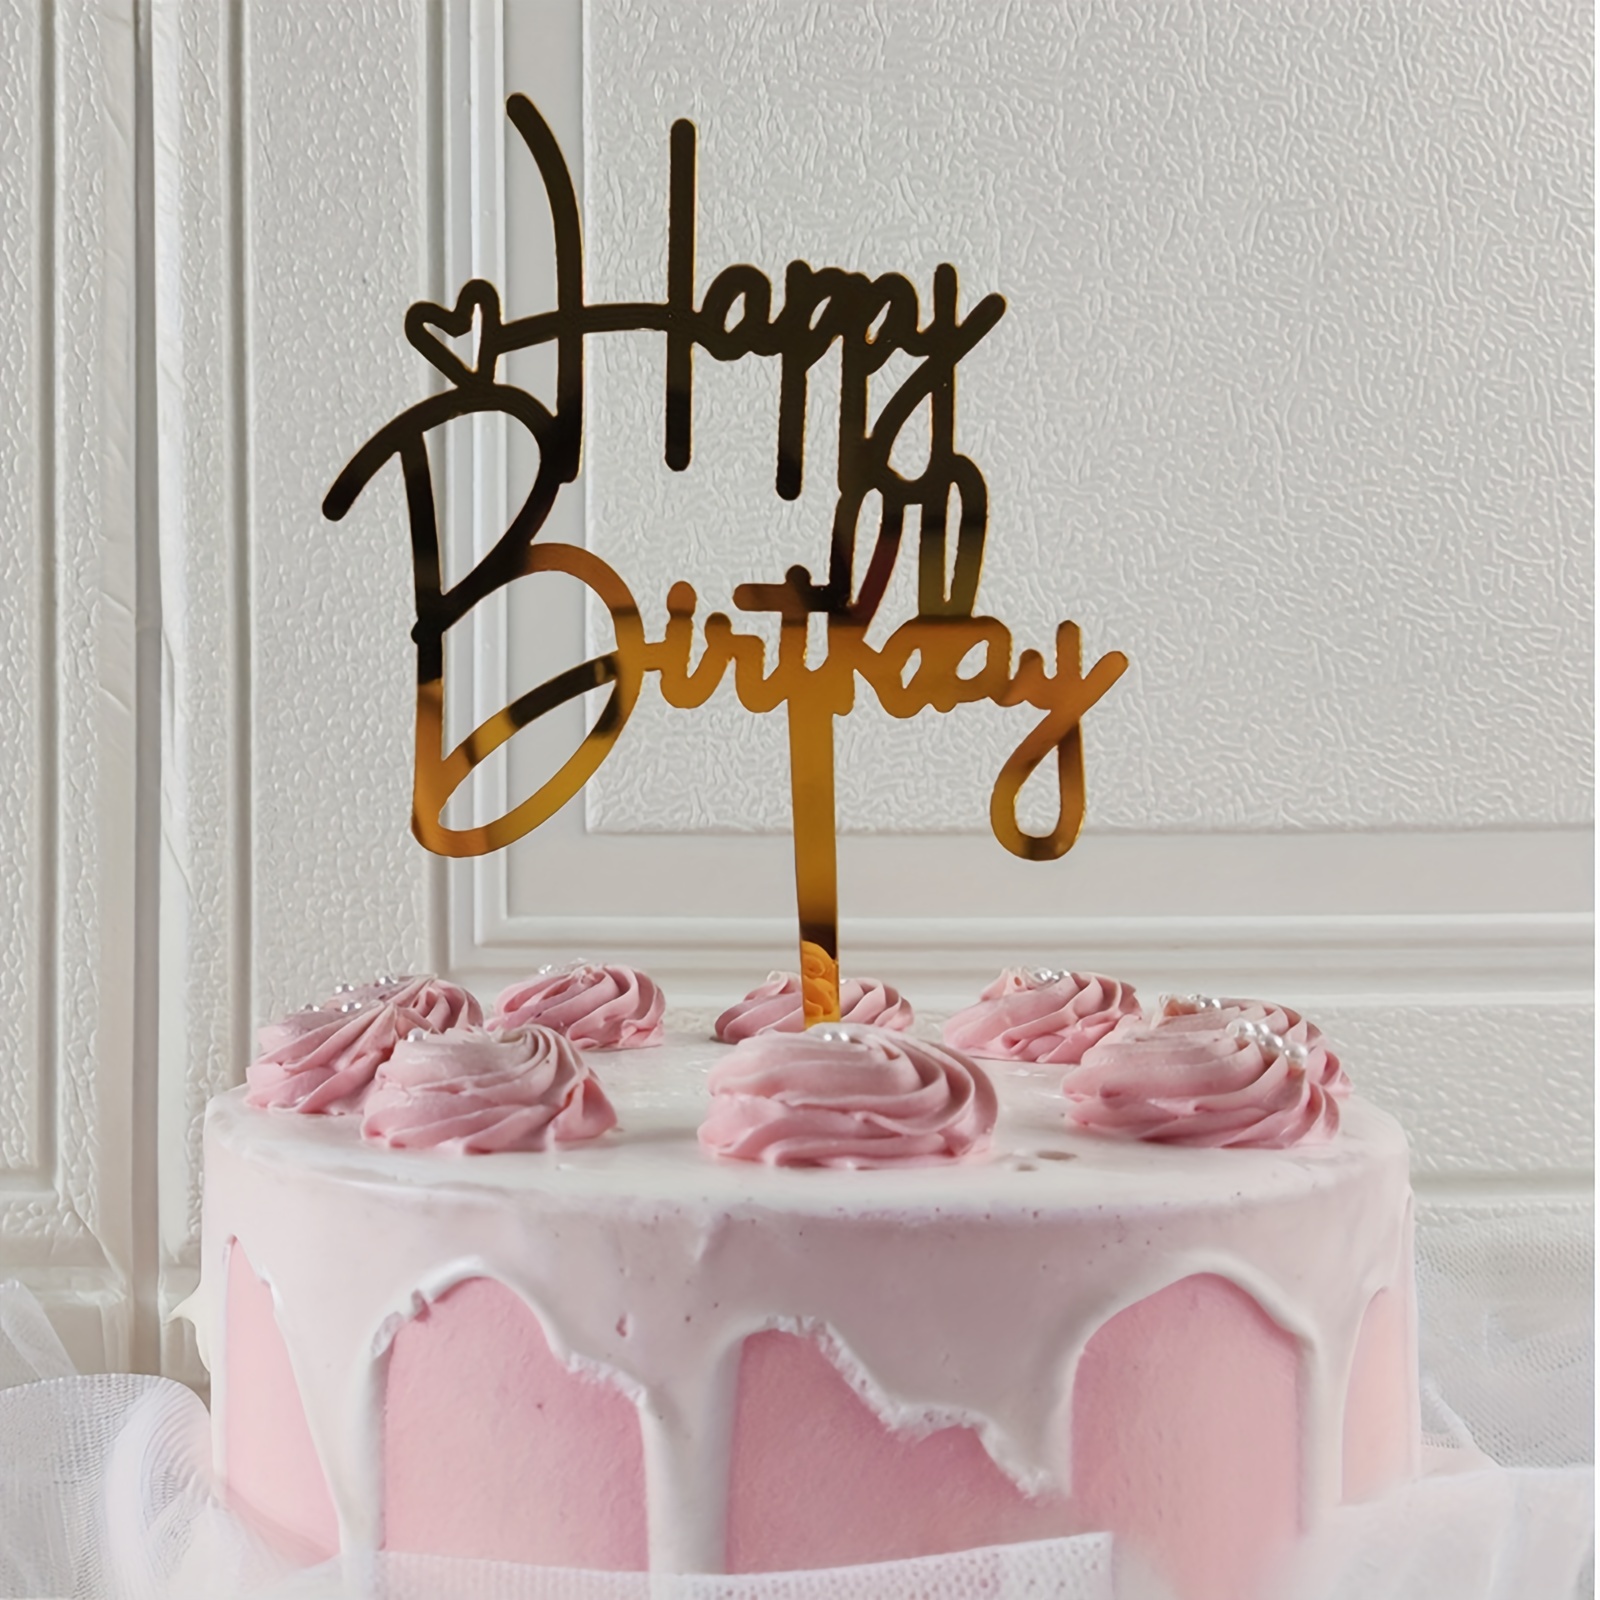 Decorazioni Torta Compleanno, 9 Pezzi Rosa Happy Birthday Torta